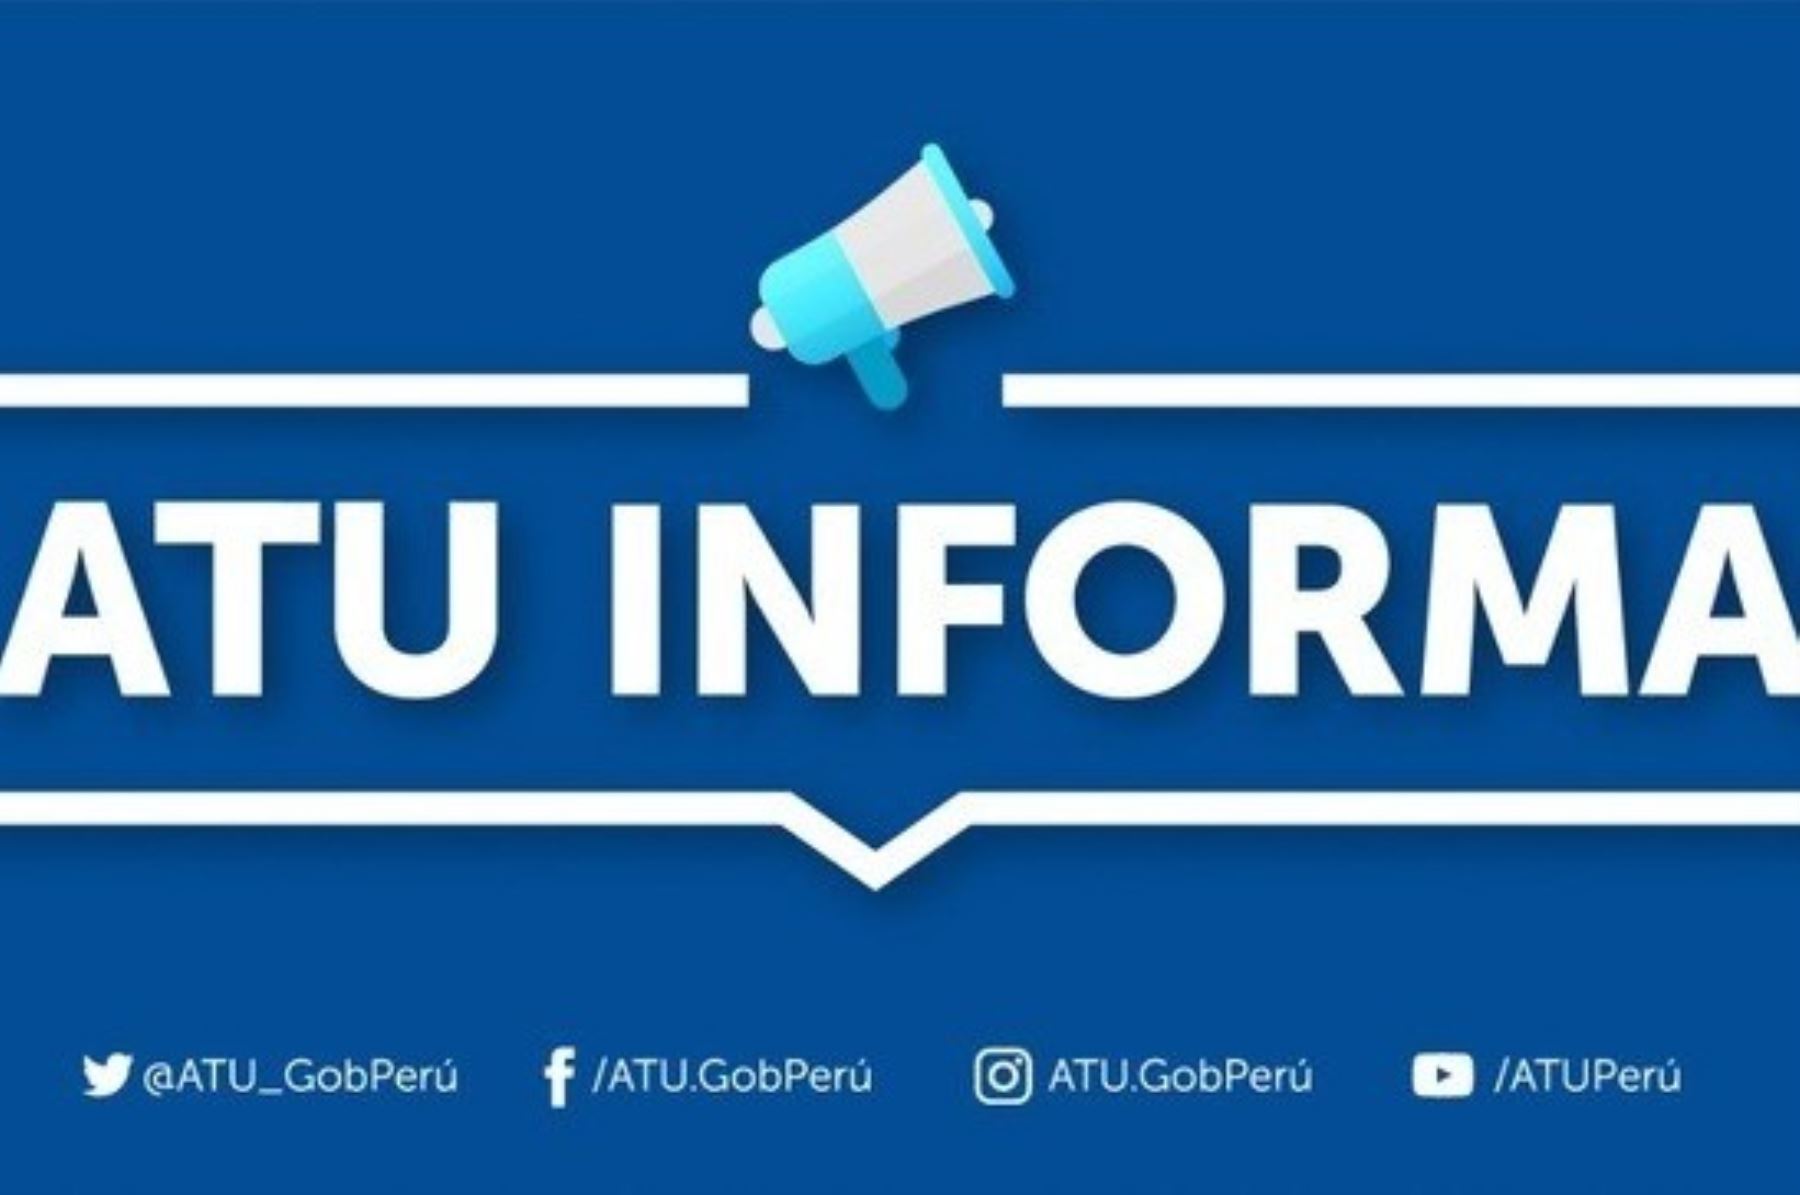 La ATU suspendió la habilitación vehicular de la unidad, y el conductor se encuentra detenido en la comisaría de San Antonio, en Miraflores donde se vienen realizando las investigaciones respectivas. ANDINA/ ATU